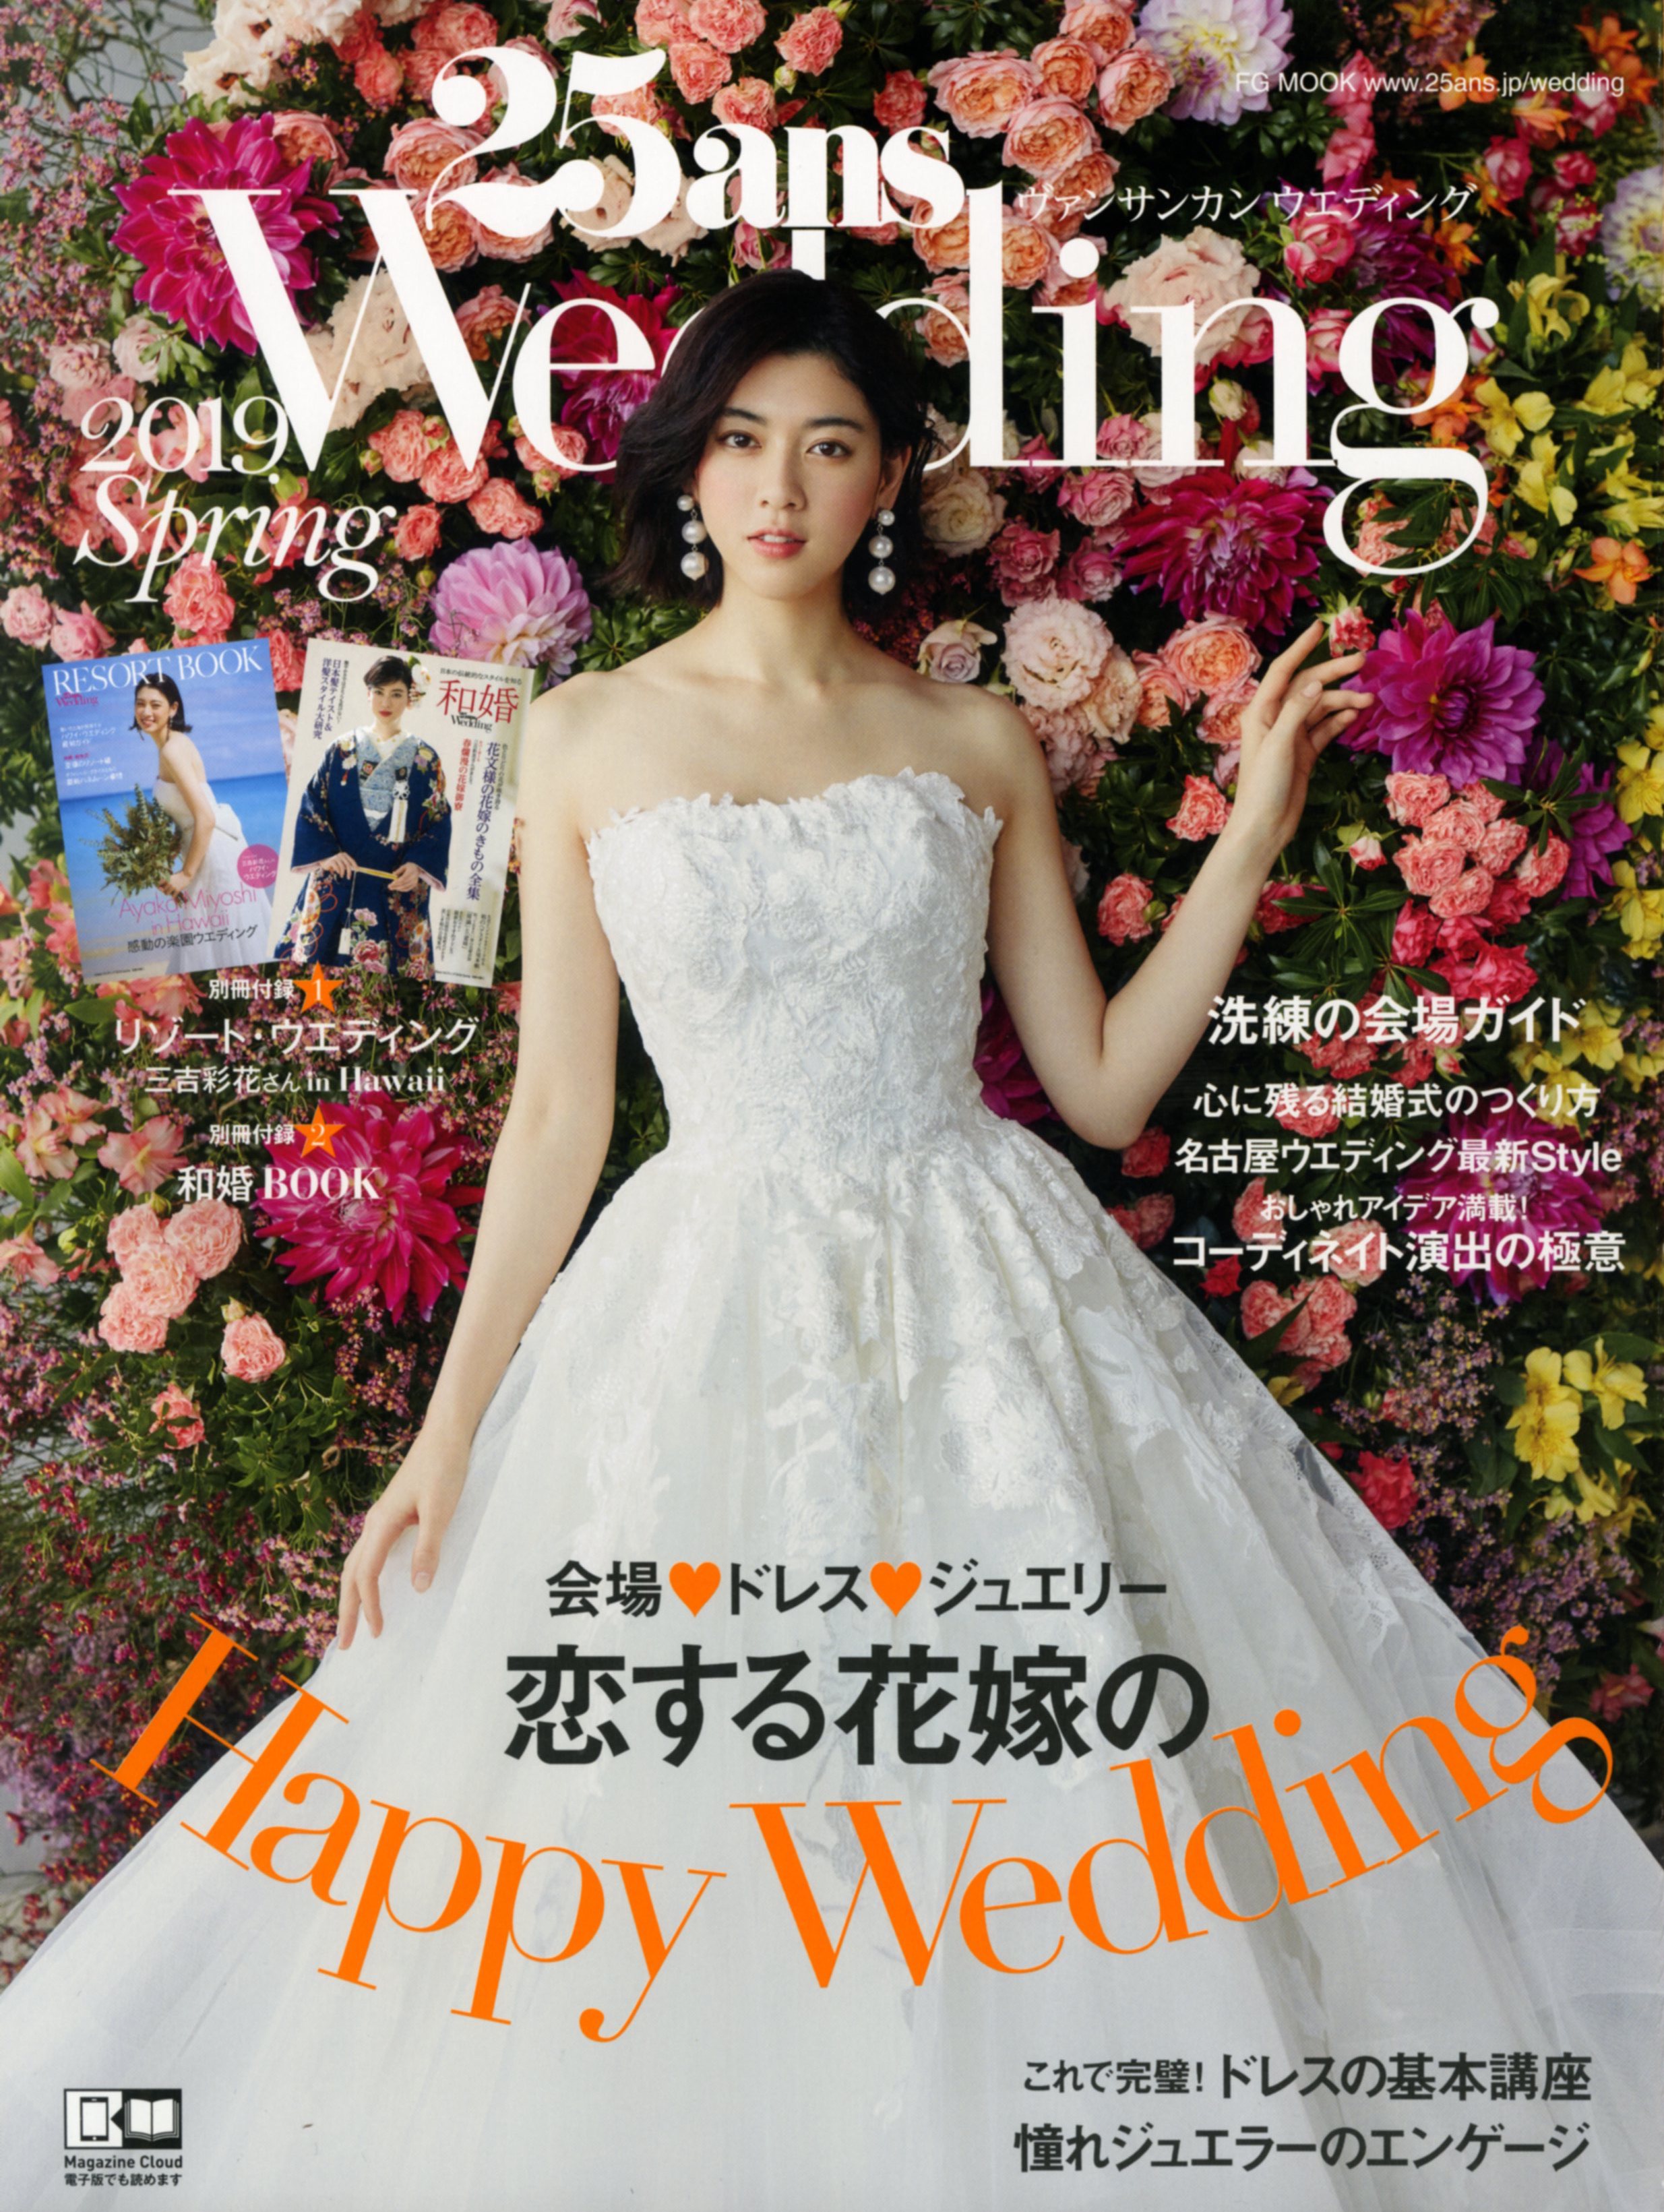 ●3月7日発売_25ans Wedding 2019 Spring 表紙